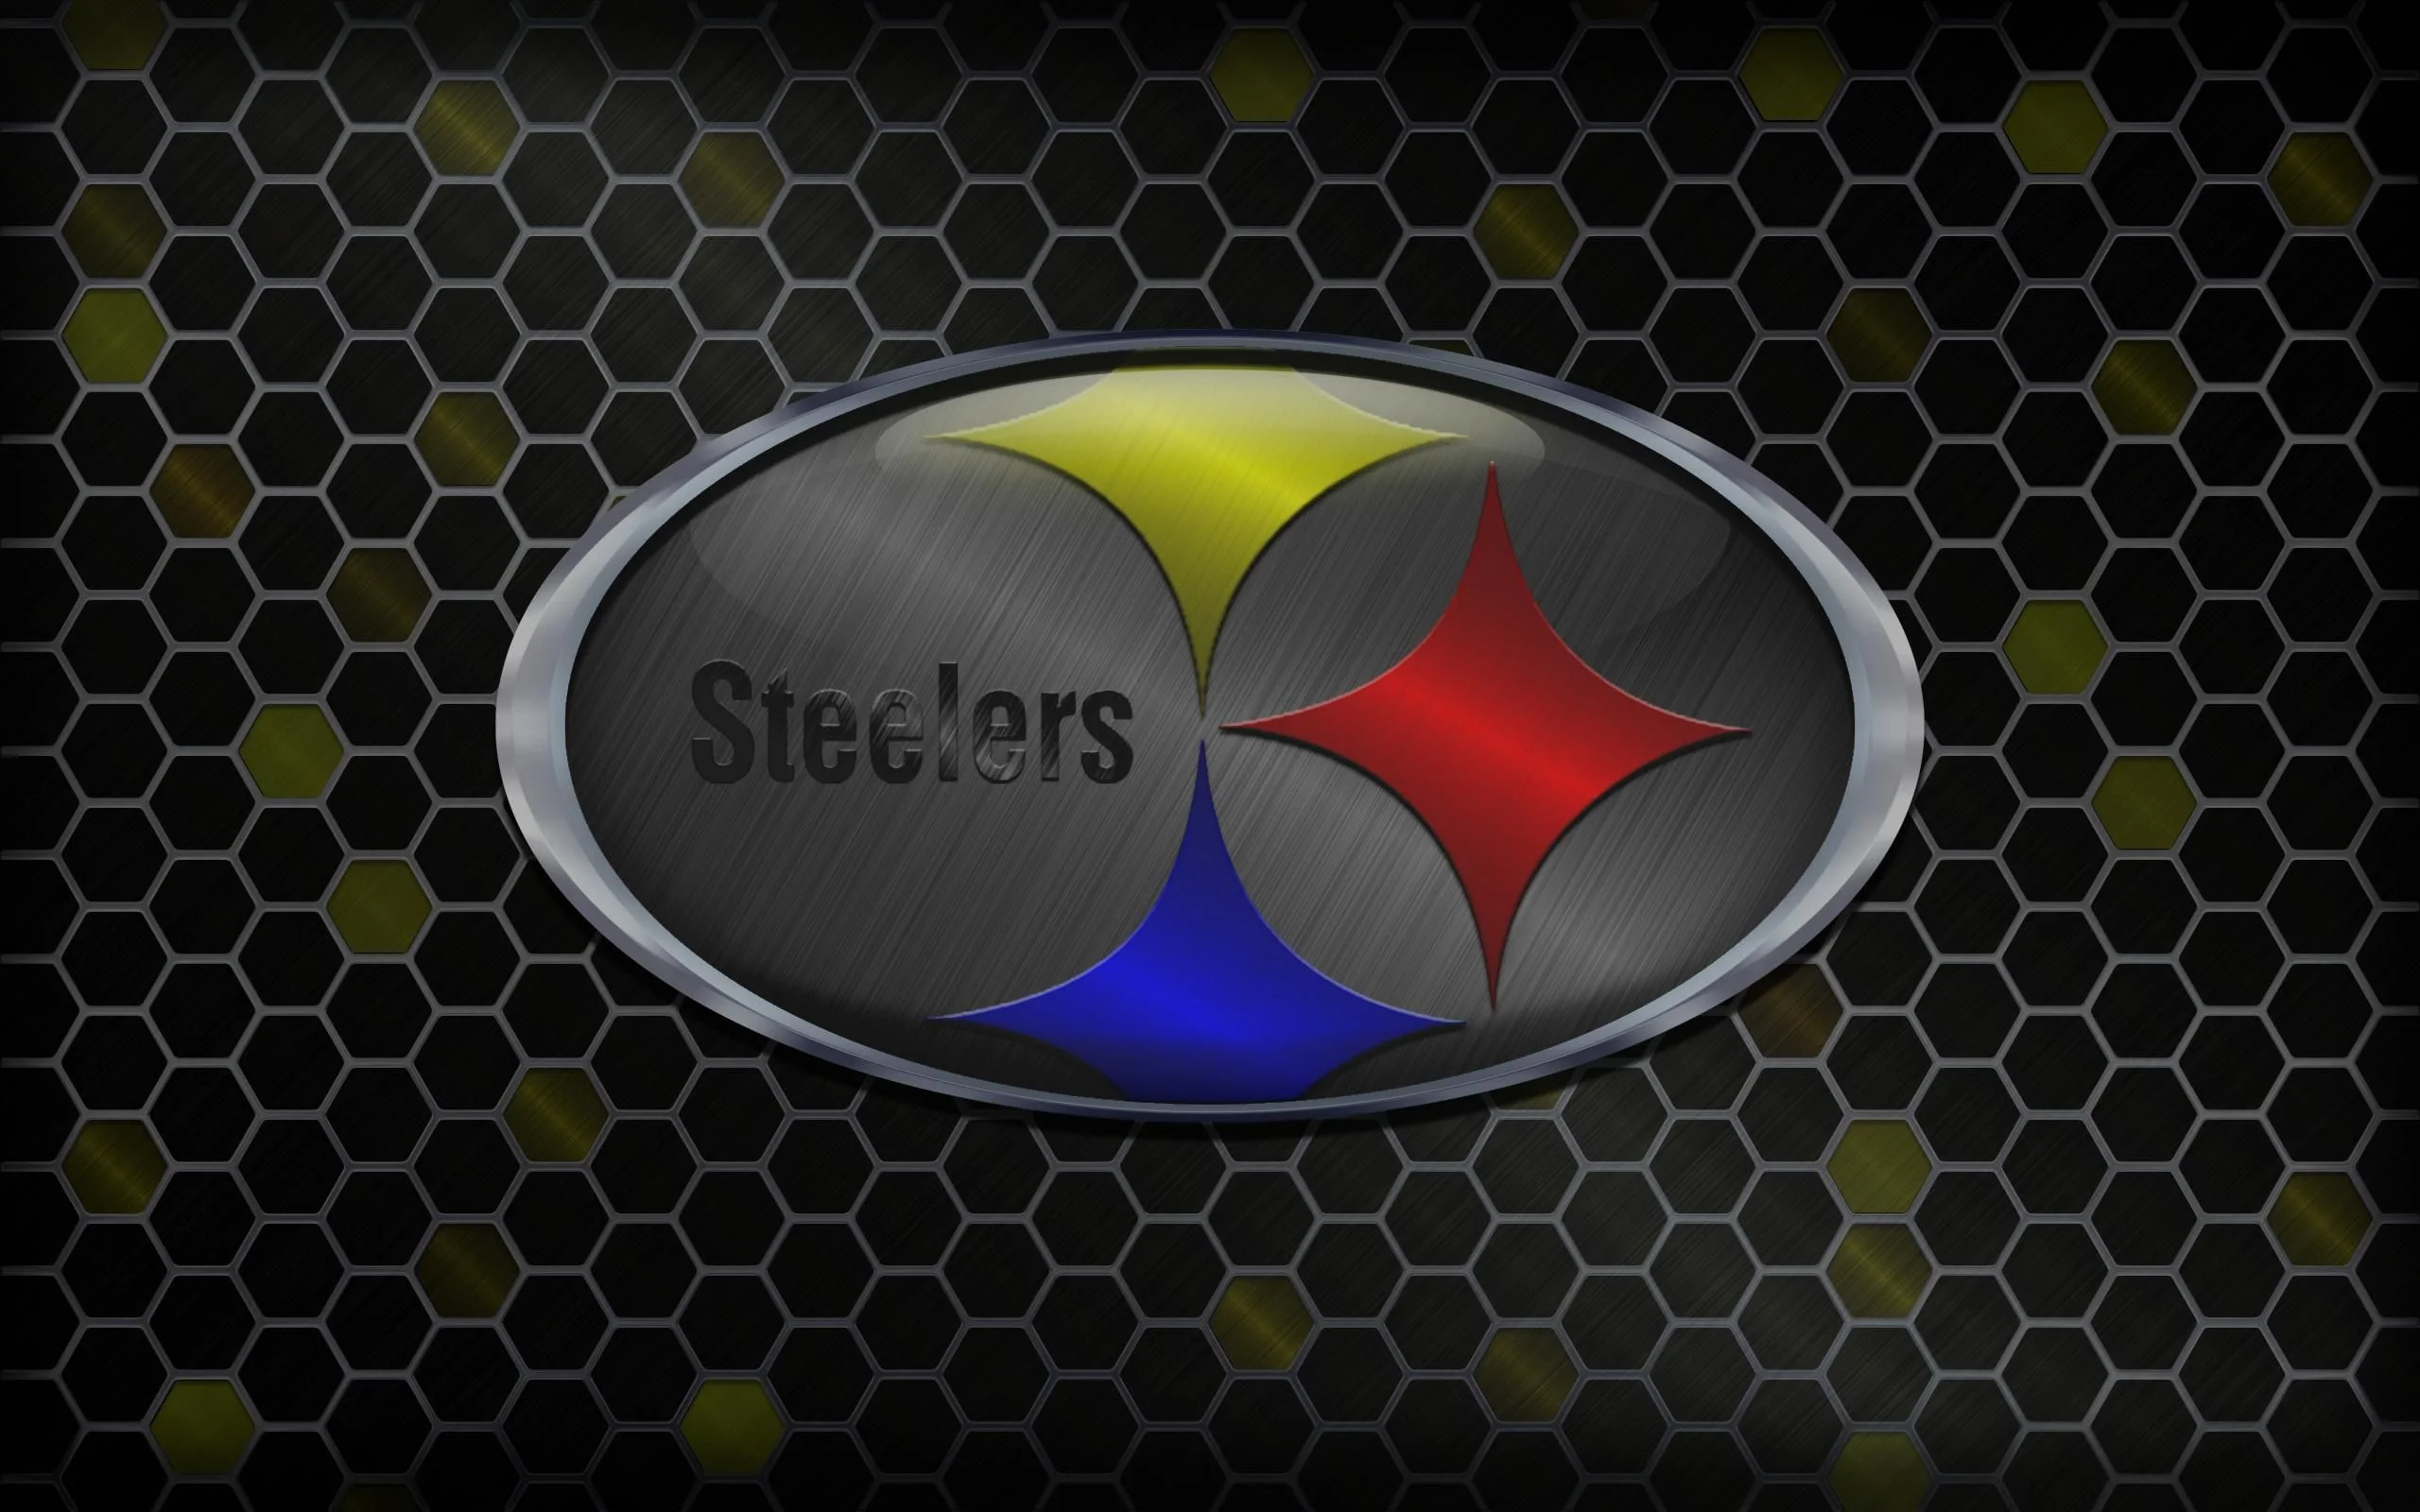 Pittsburgh Steelers Wallpaper Hd Wallpaper Pittsburgh Steelers .